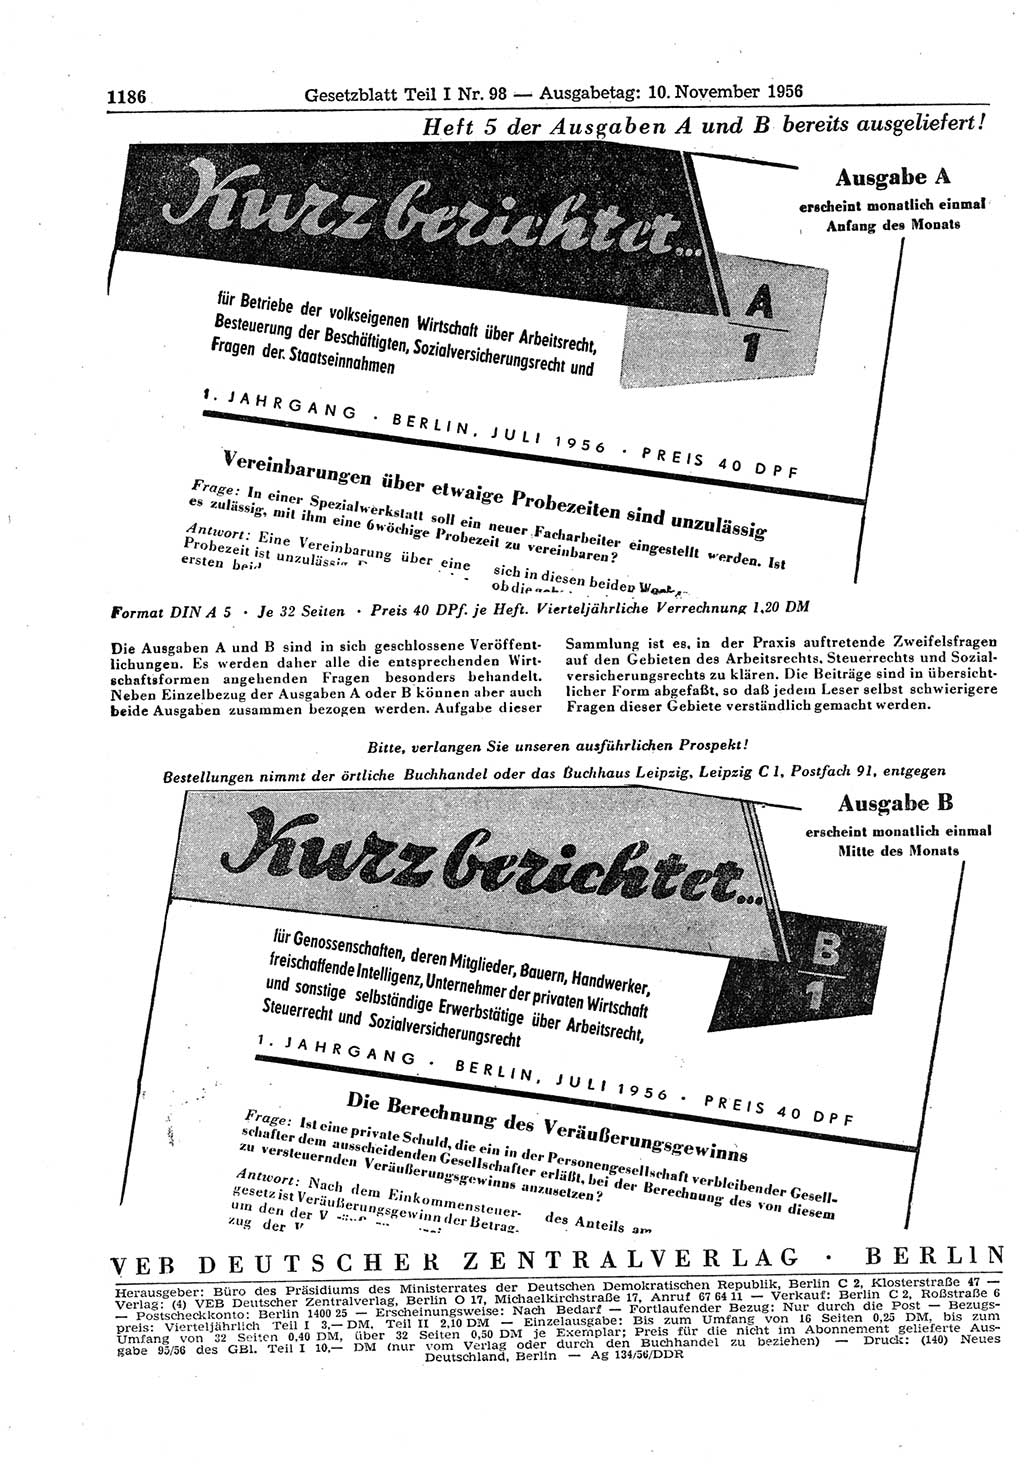 Gesetzblatt (GBl.) der Deutschen Demokratischen Republik (DDR) Teil Ⅰ 1956, Seite 1186 (GBl. DDR Ⅰ 1956, S. 1186)